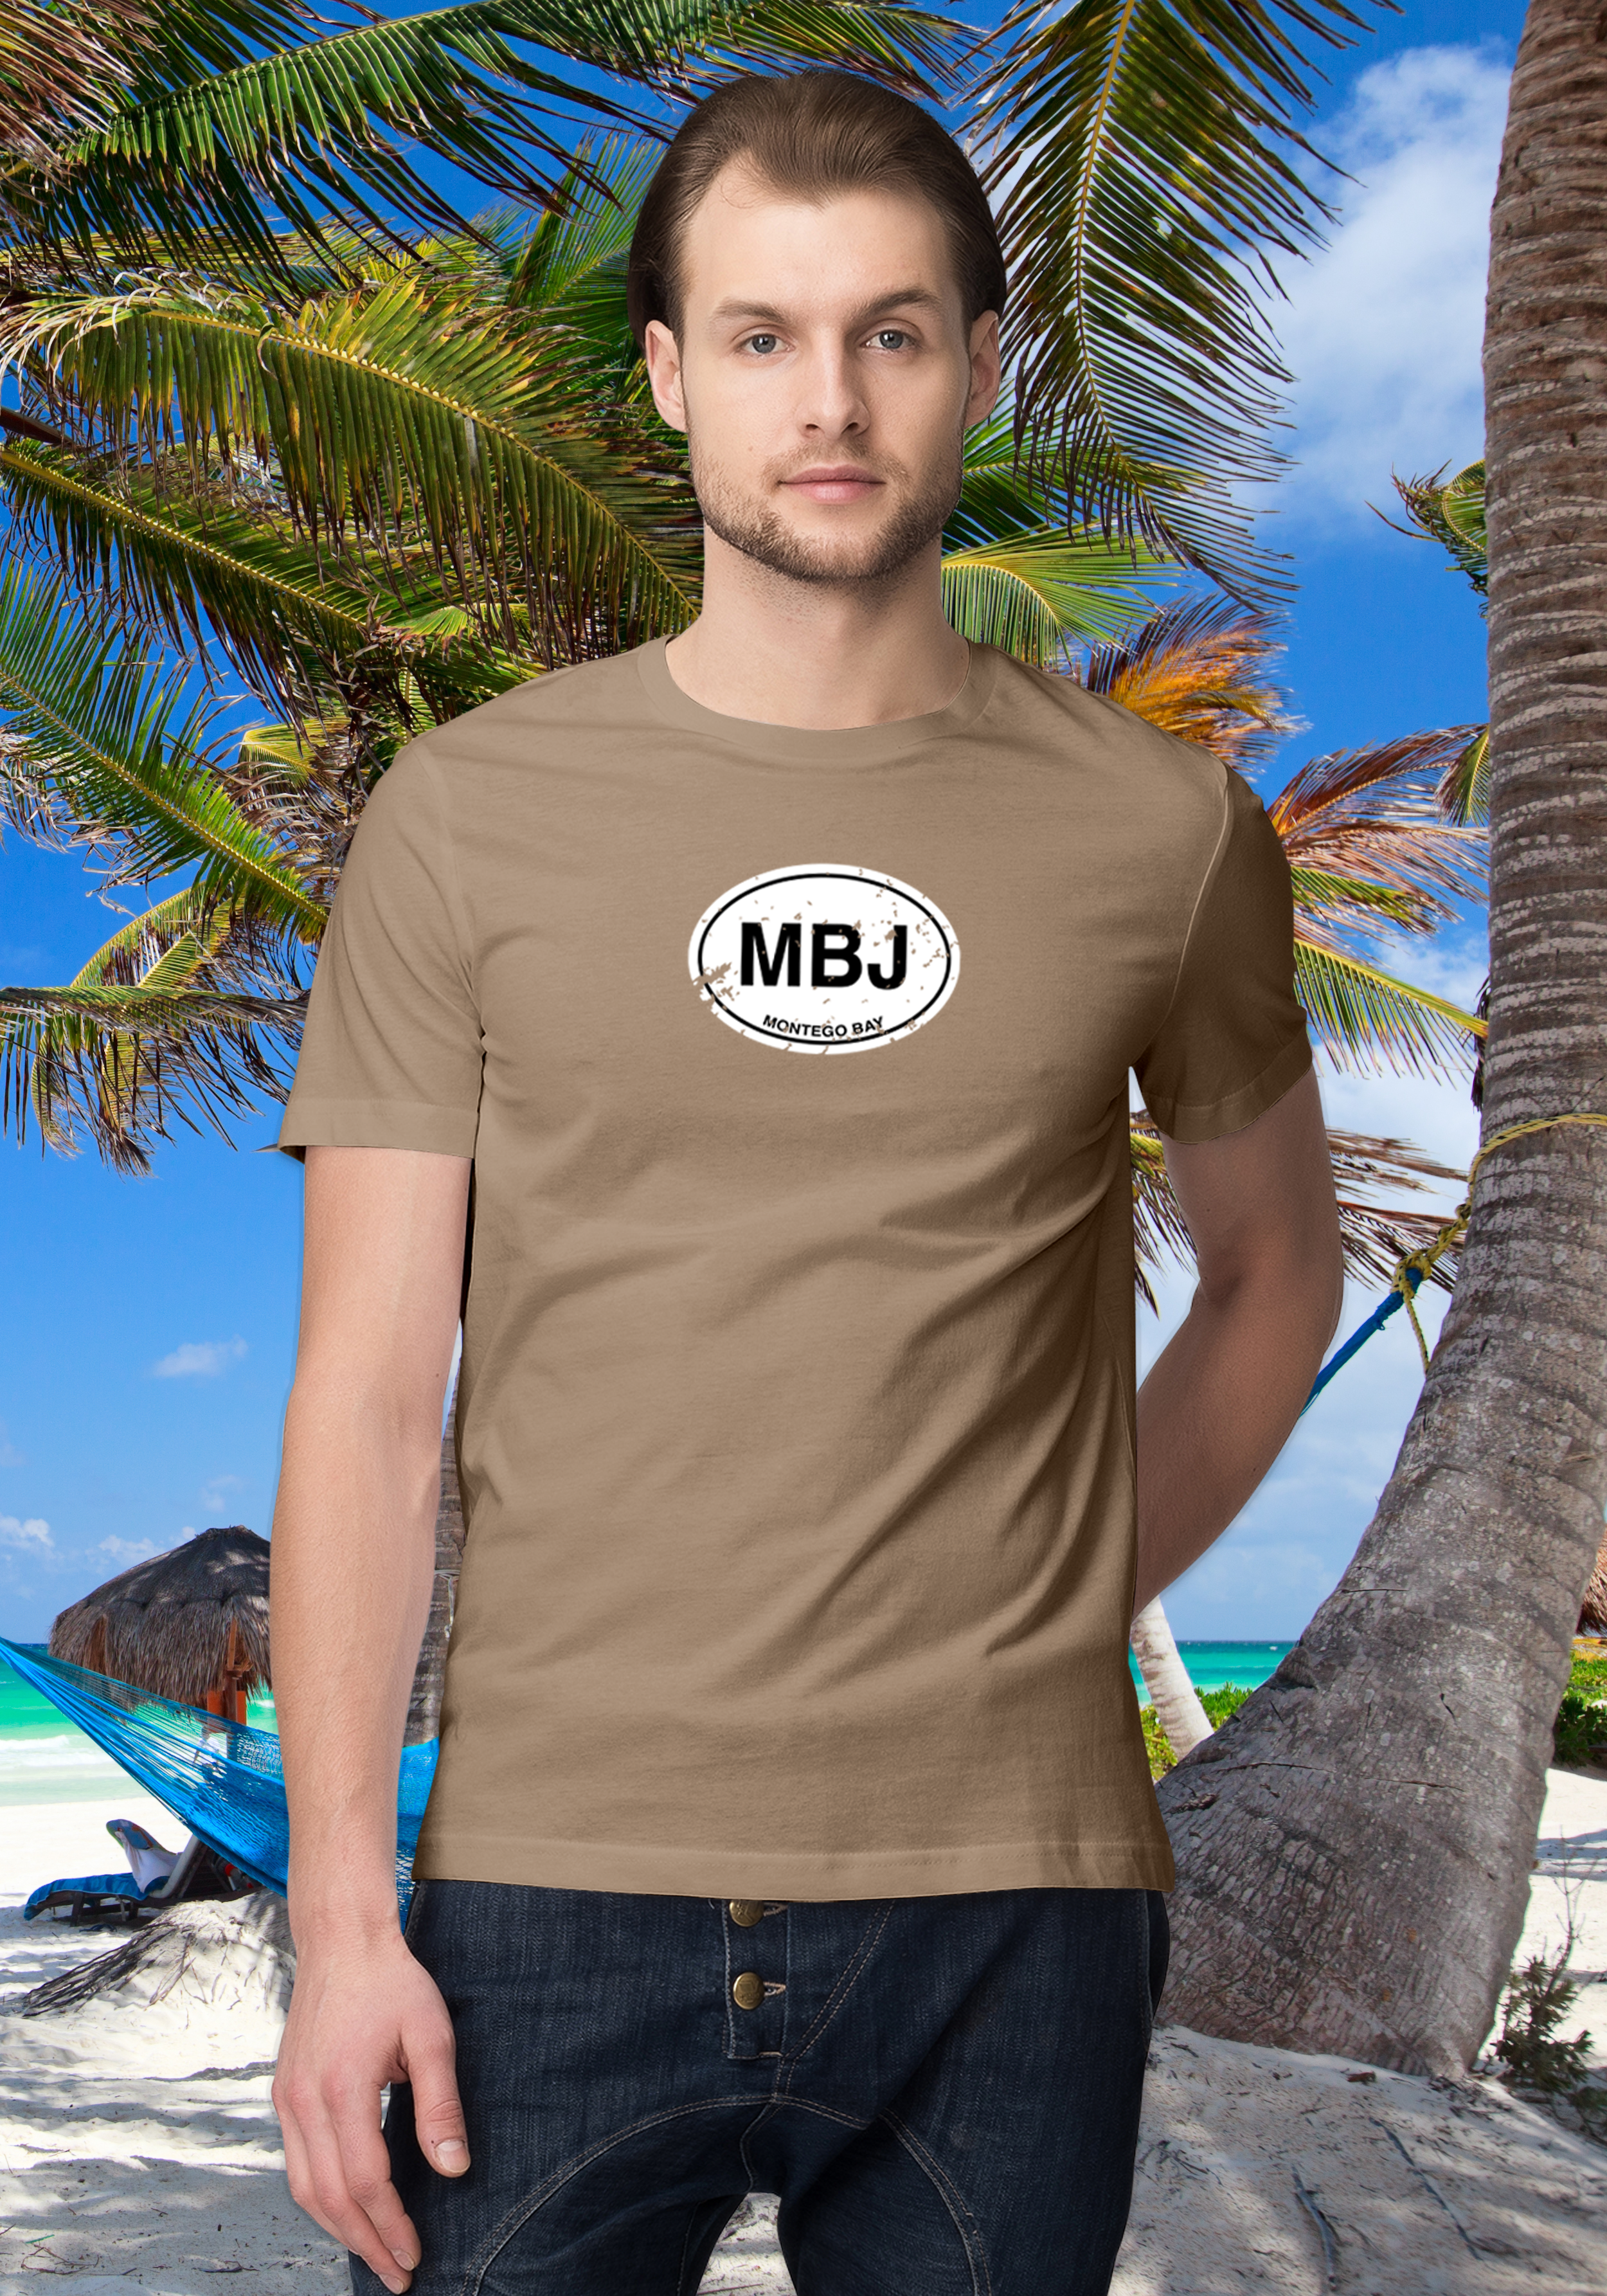 Montego Bay Men's Classic T-Shirt Souvenirs - My Destination Location